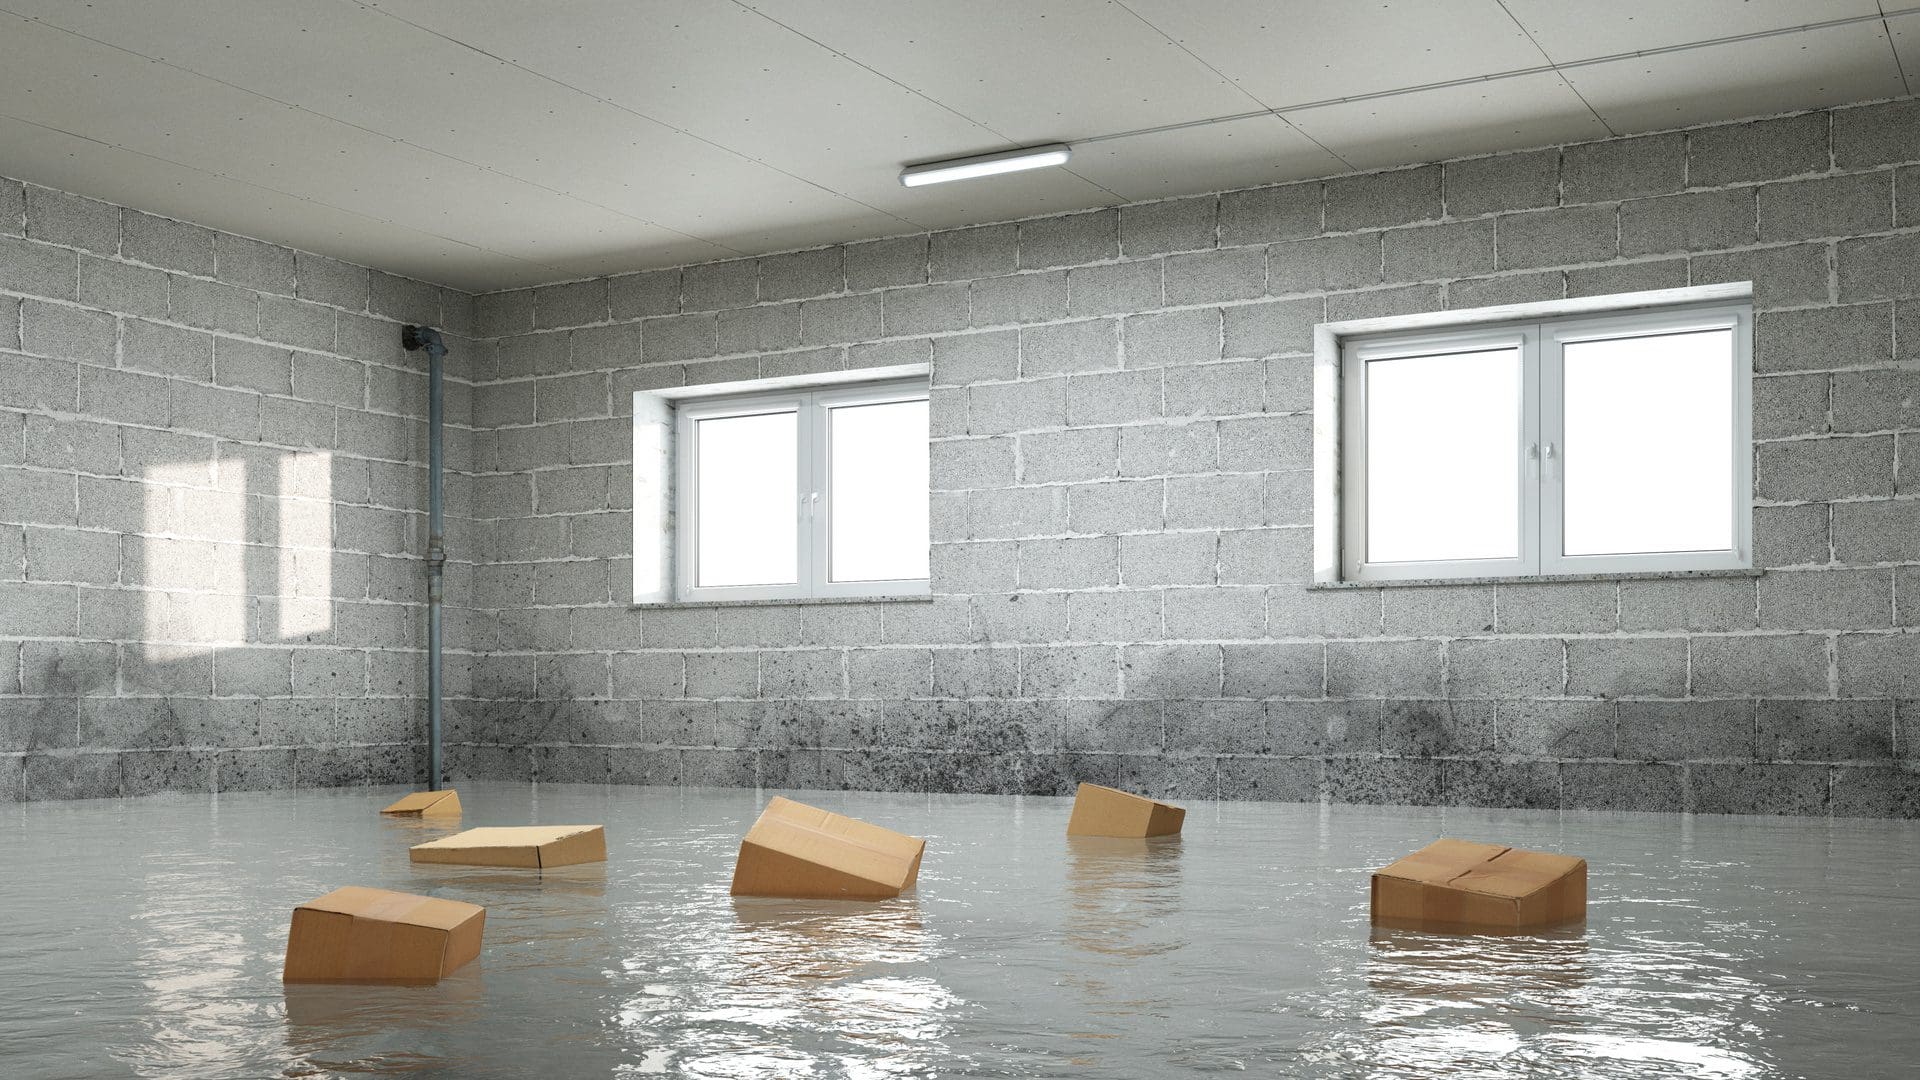 Wasserschaden & Wohngebäudeversicherung - Die Schadensregulierung läuft nicht immer so glatt, wie sich Versicherungsnehmer das wünschen und erwarten (© Robert Kneschke / stock.adobe.com)